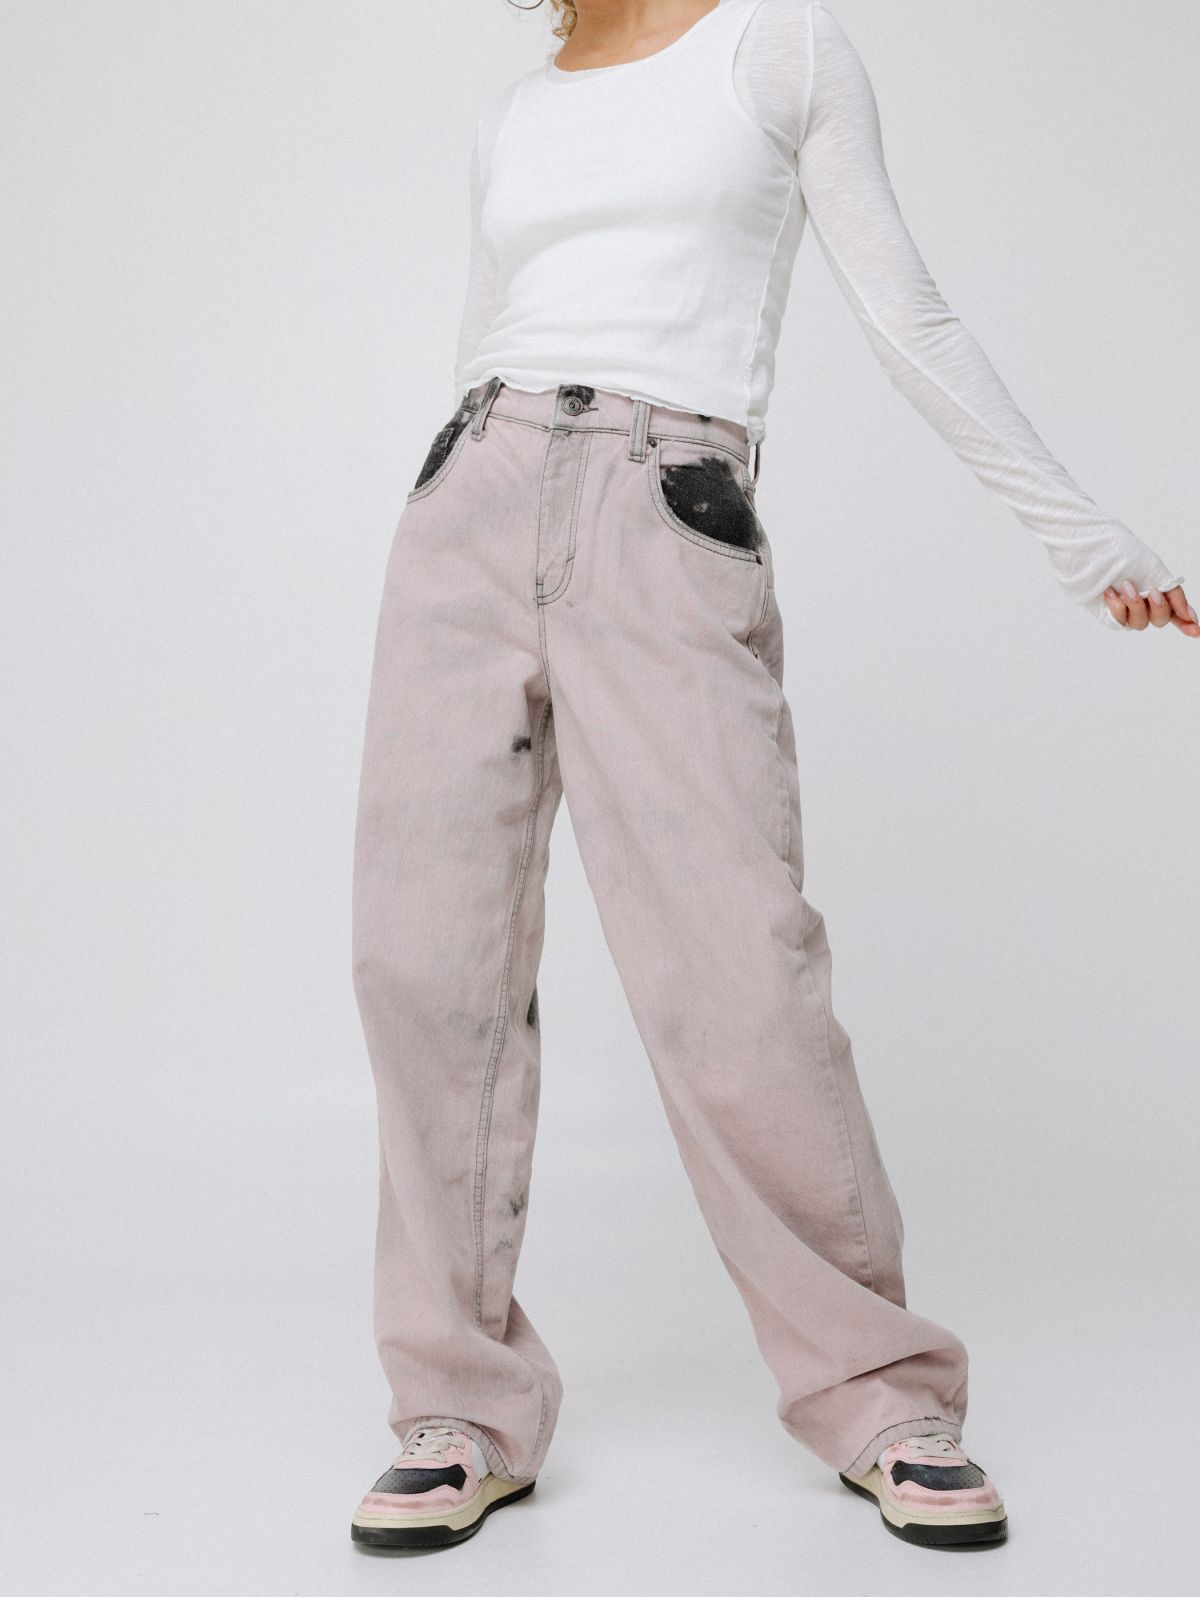  ג'ינס ווש בגזרה רחבה של URBAN OUTFITTERS